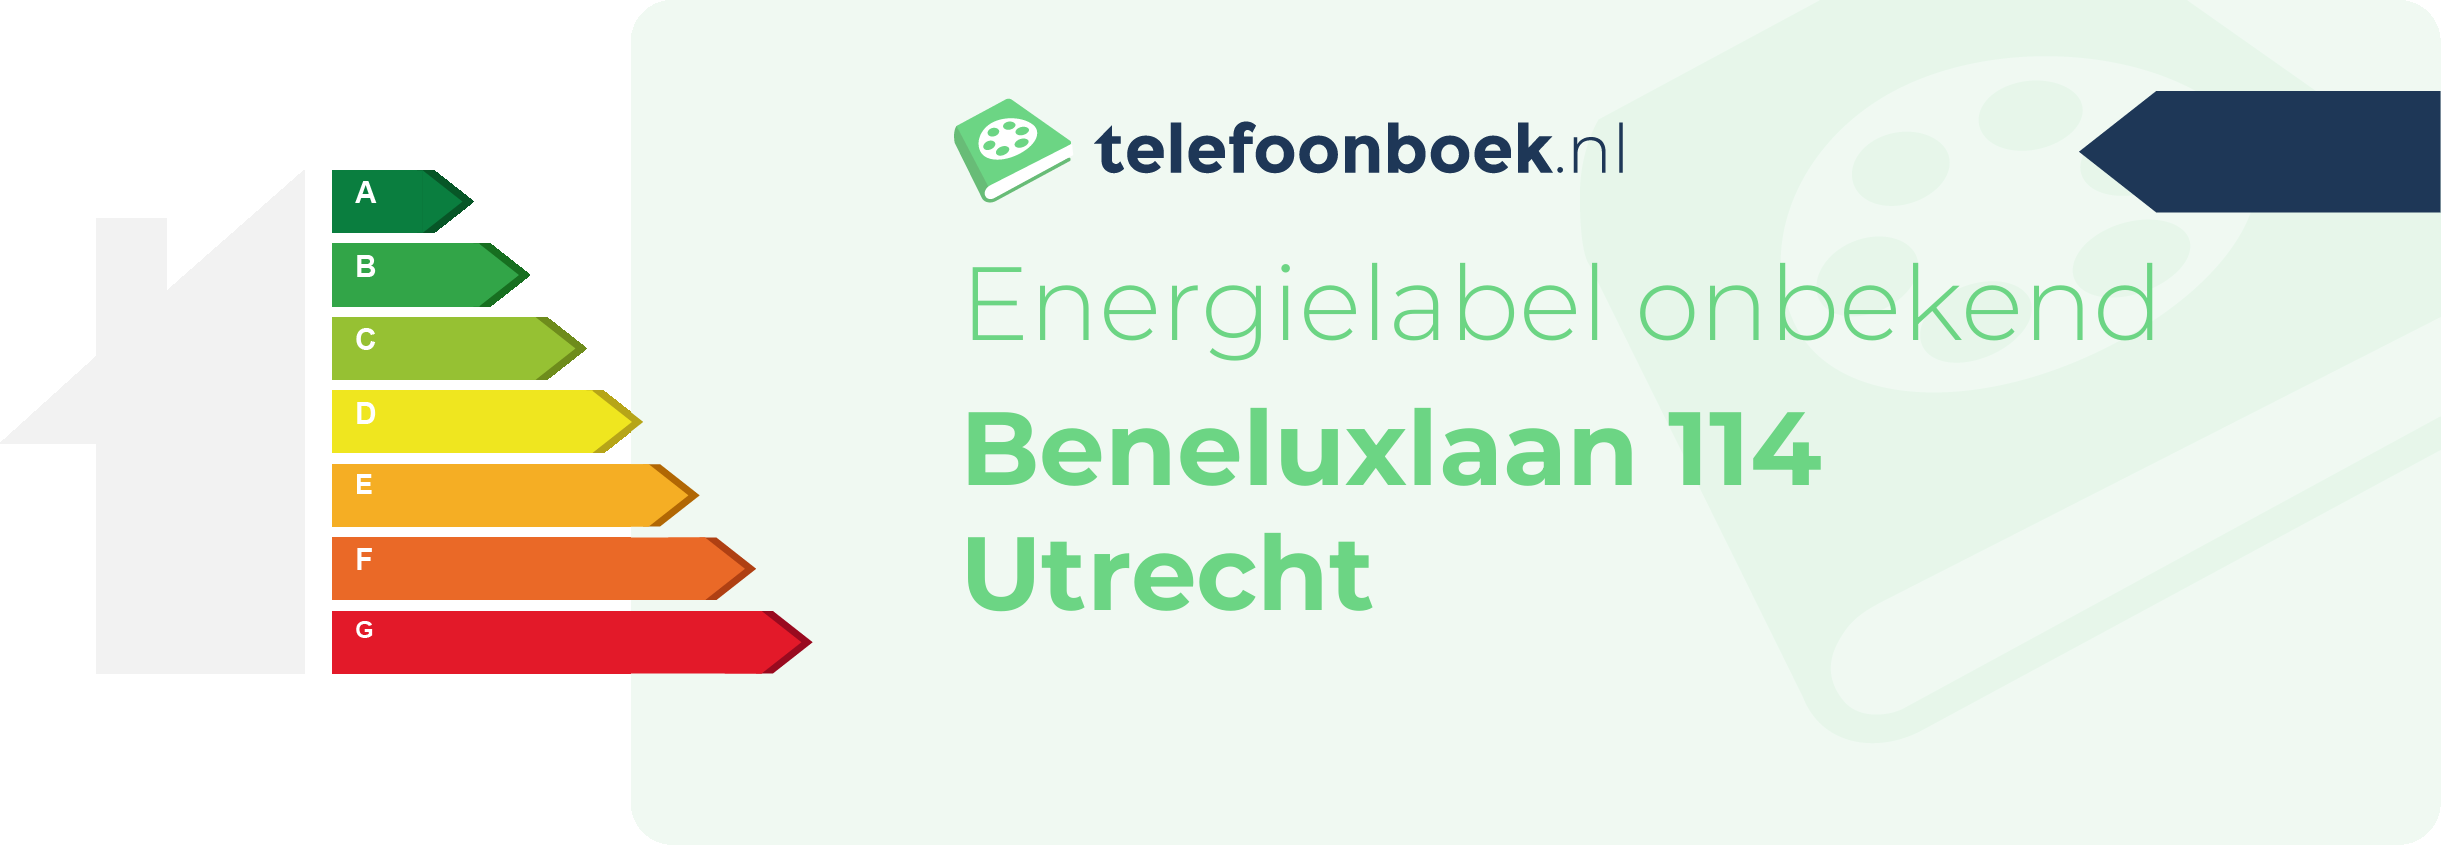 Energielabel Beneluxlaan 114 Utrecht